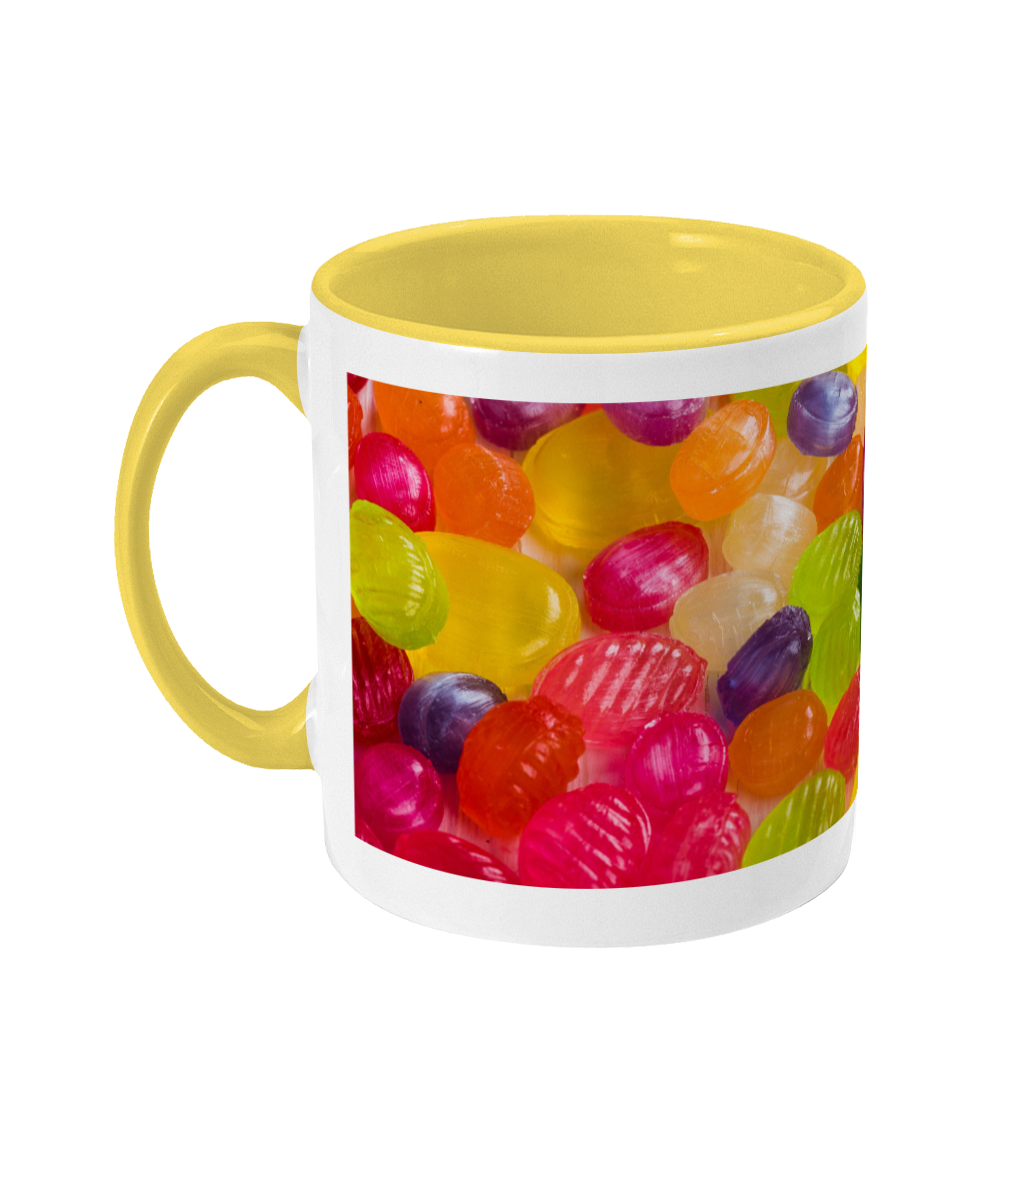 Sweet Shop 'Boiled Sweets' Mug